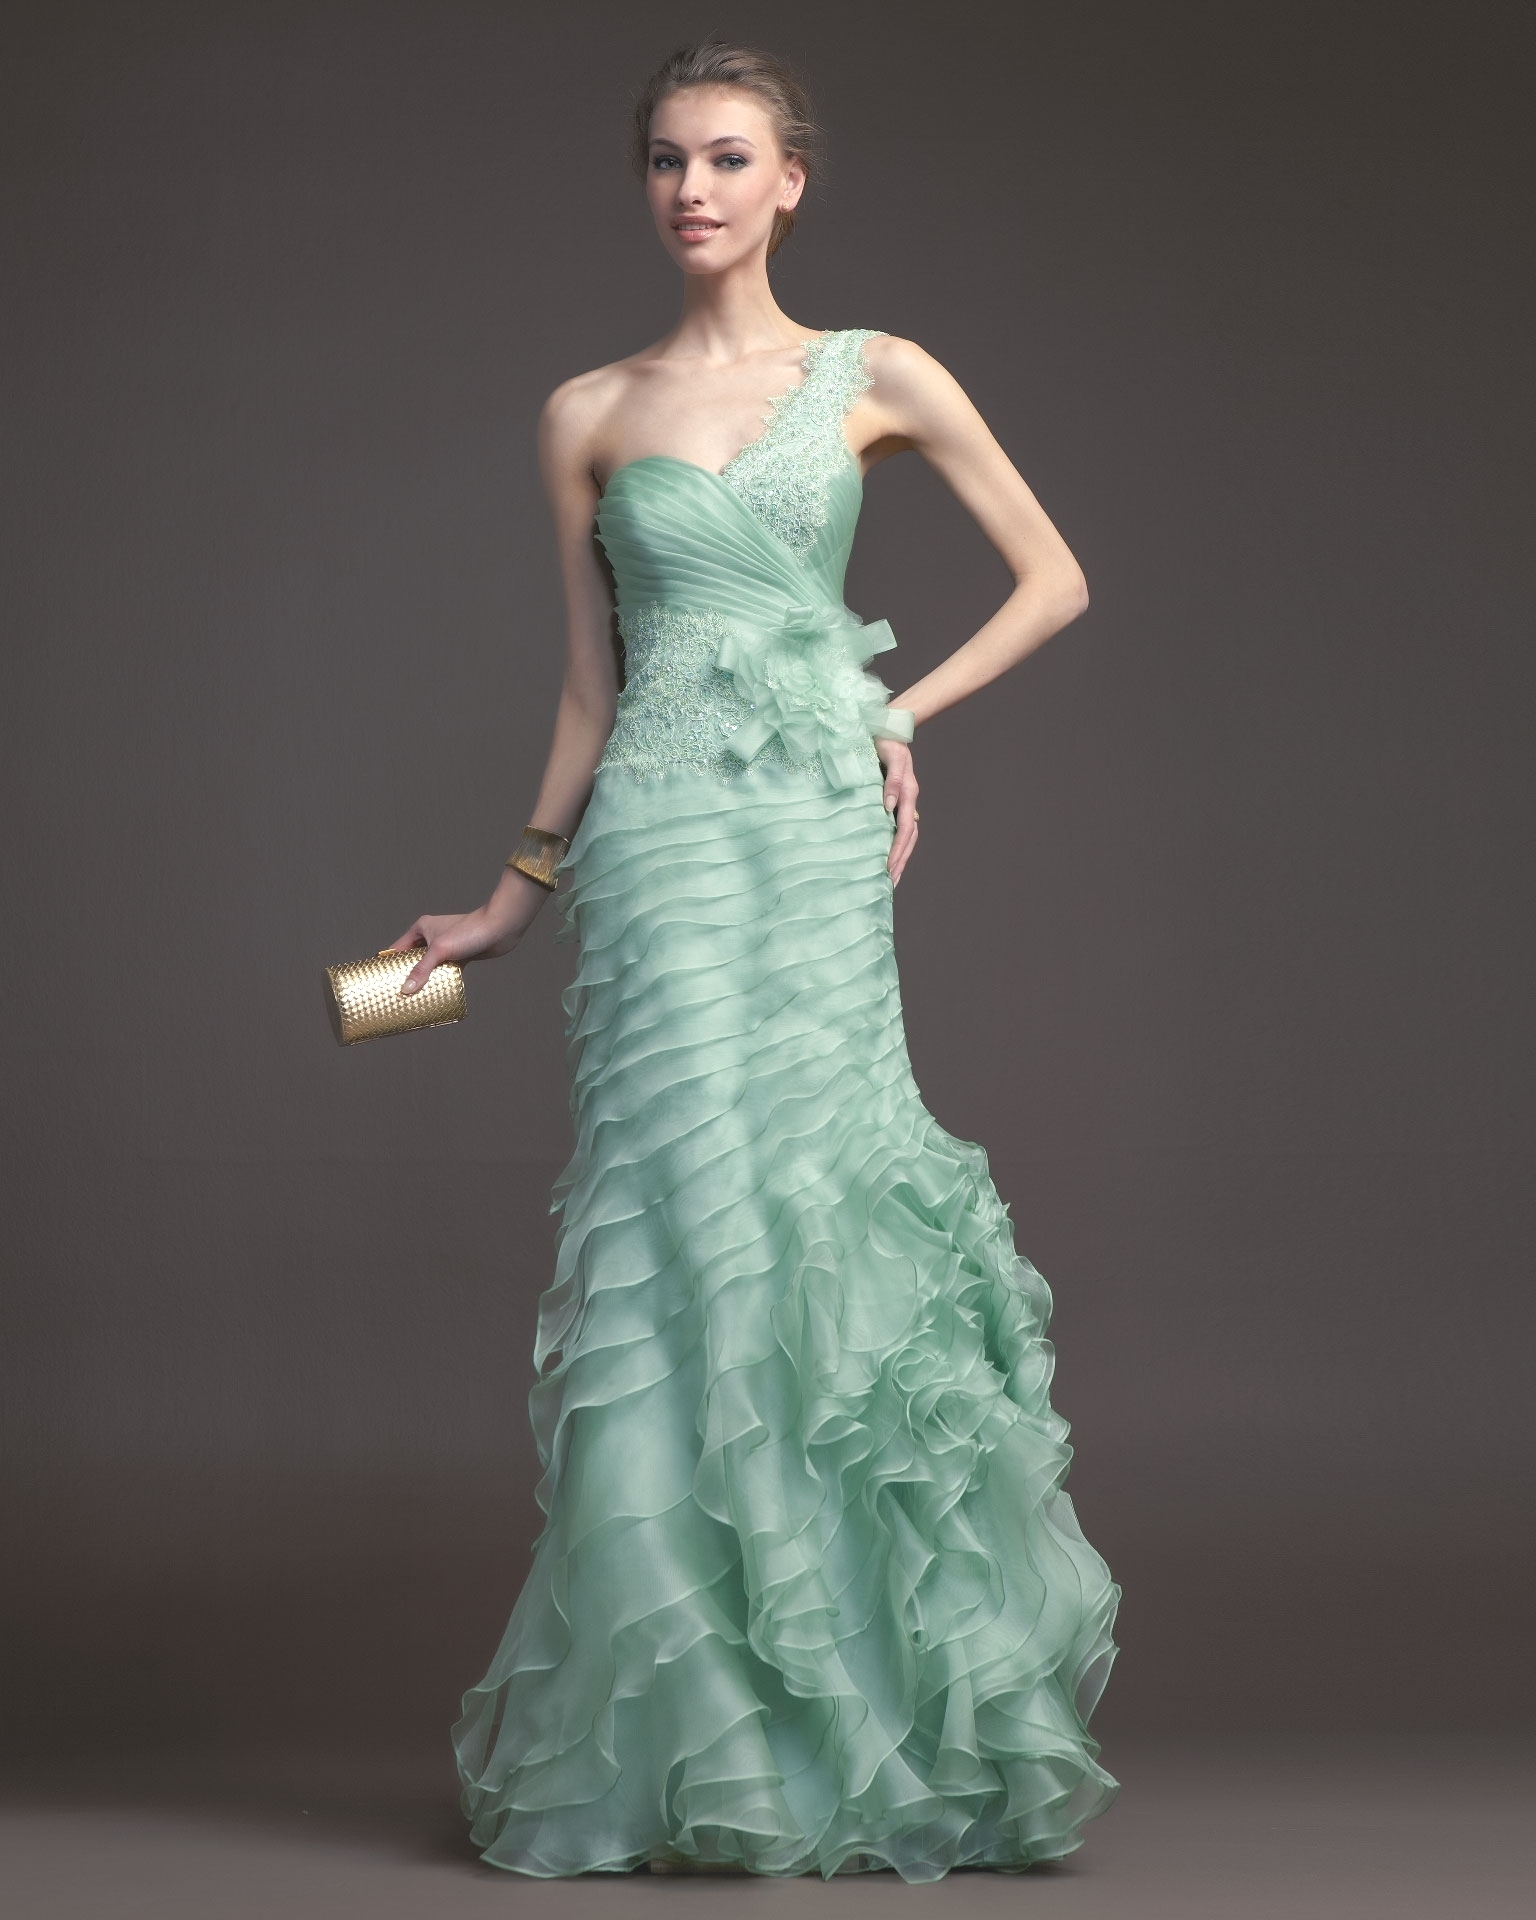 Вечерние платья для настоящих леди или коллекция Aire Barcelona 2014 года, фото № 54